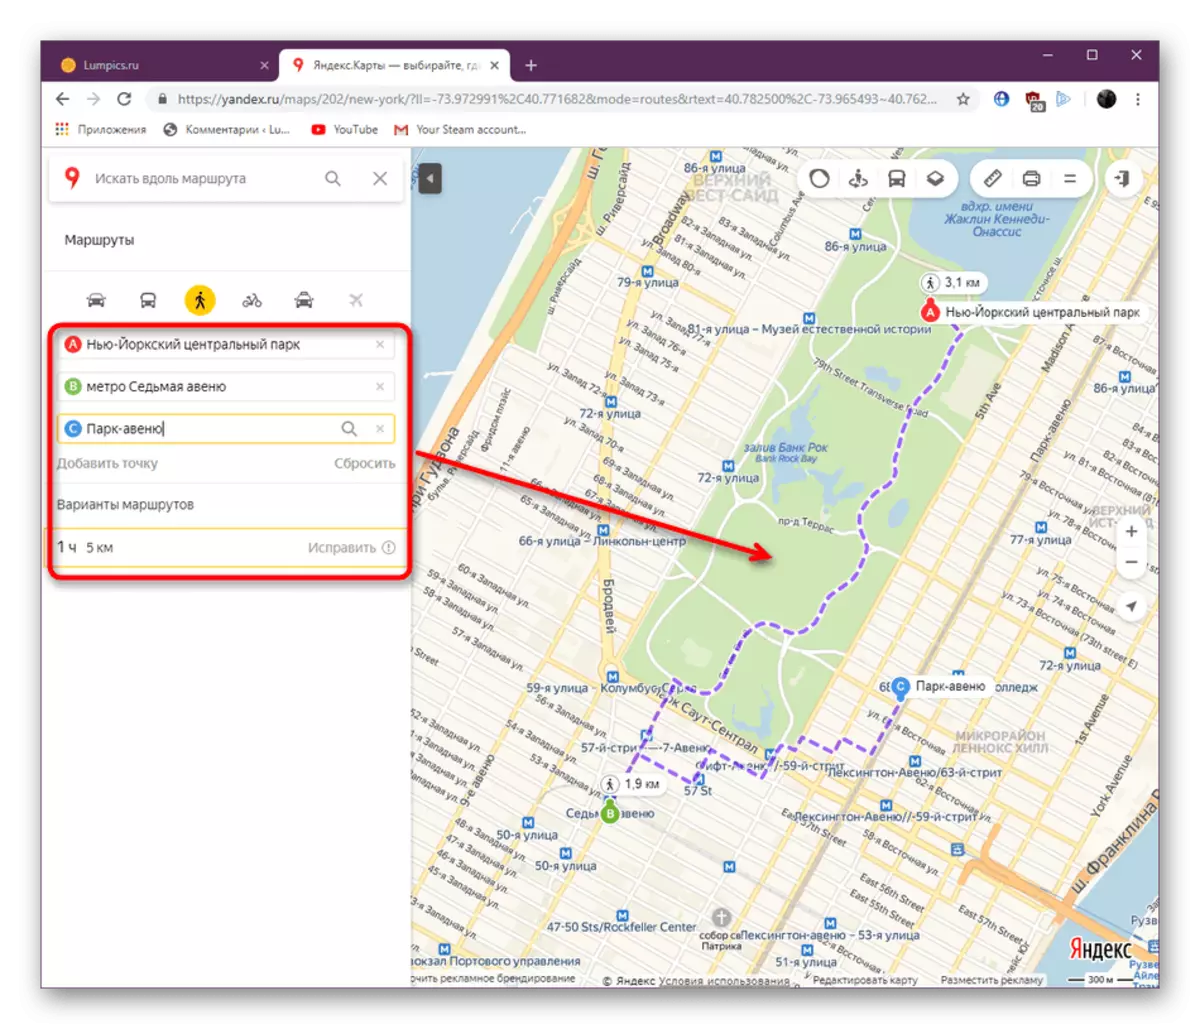 مسیر را با نقاط اضافی در وب سایت Yandex.Maps نمایش می دهد